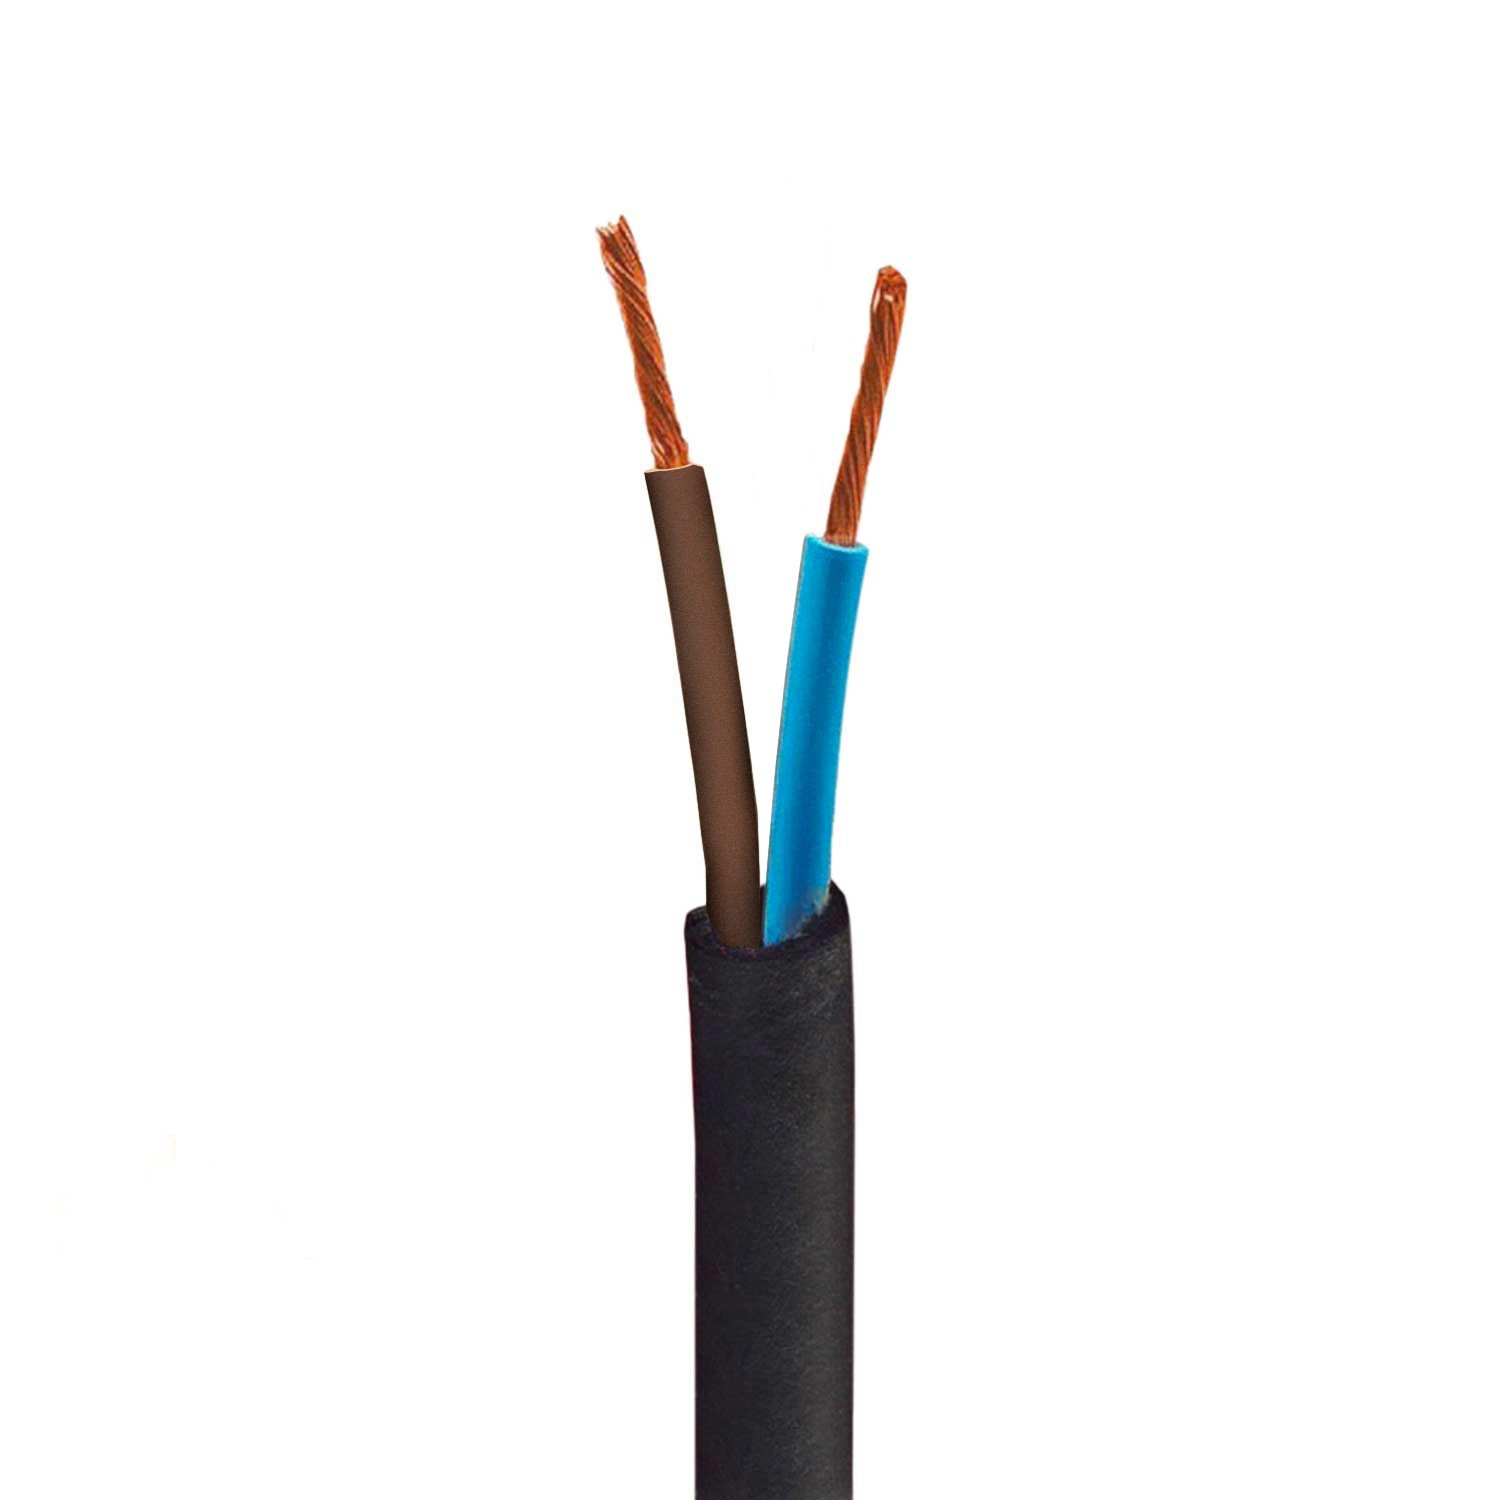 Câbles à gaine caoutchouc pour installation électrique à partir de 1,80 €